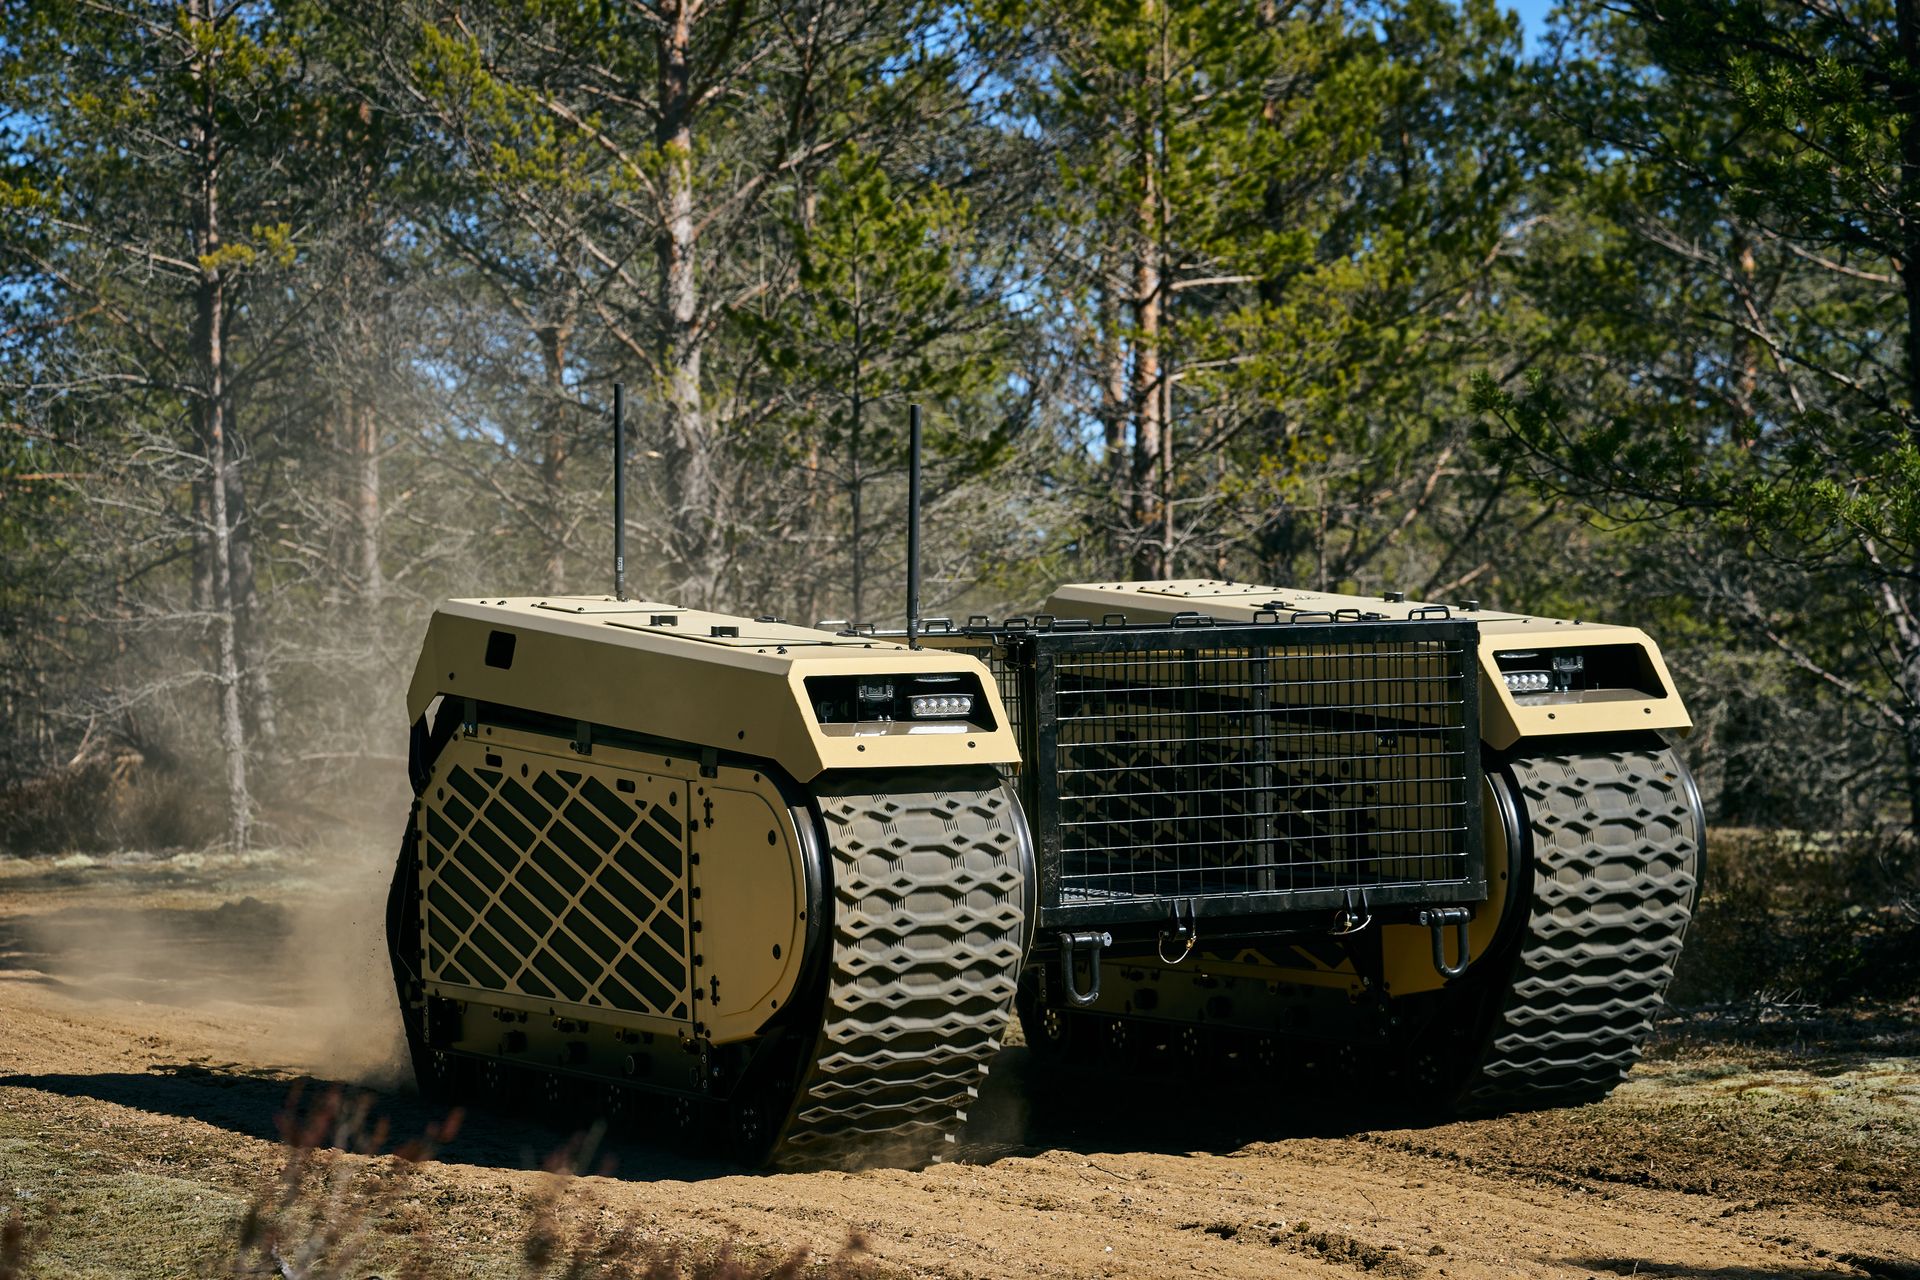 La cinquena generació de tancs Themis UGV de Milrem Robotics es descriu com un "vehicle de rastreig polivalent", que es pot equipar amb una varietat de tecnologies de lluita com ara sistemes d'armes, drons lligats i dispositius de detecció de IED.